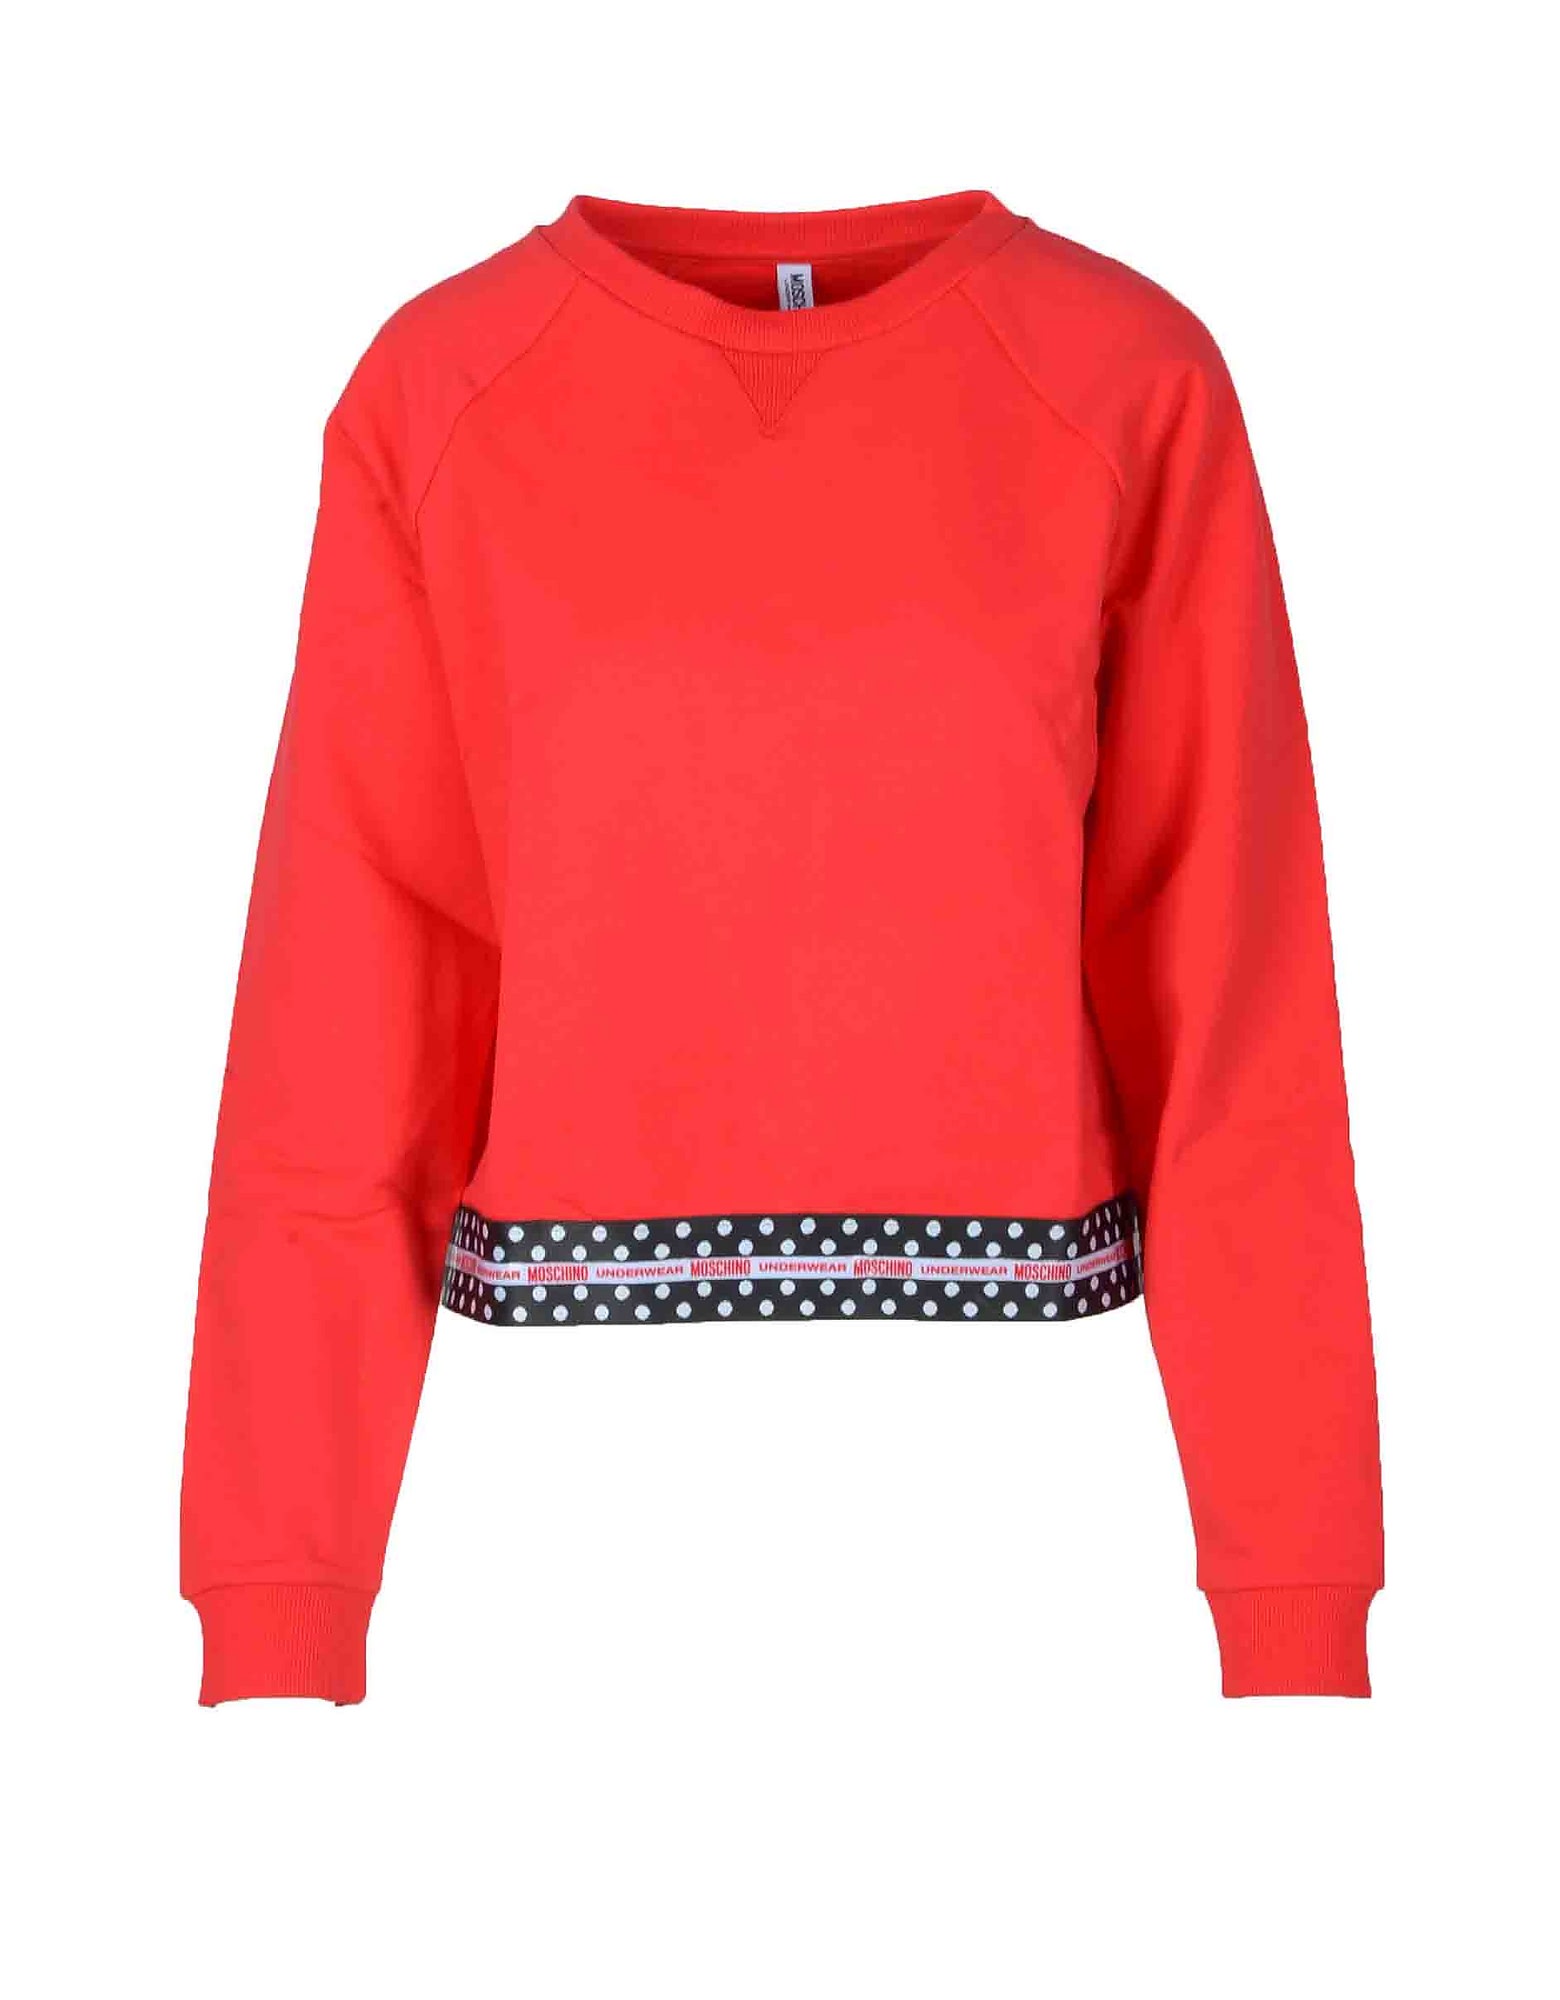 Moschino Womens Red Sweatshirt